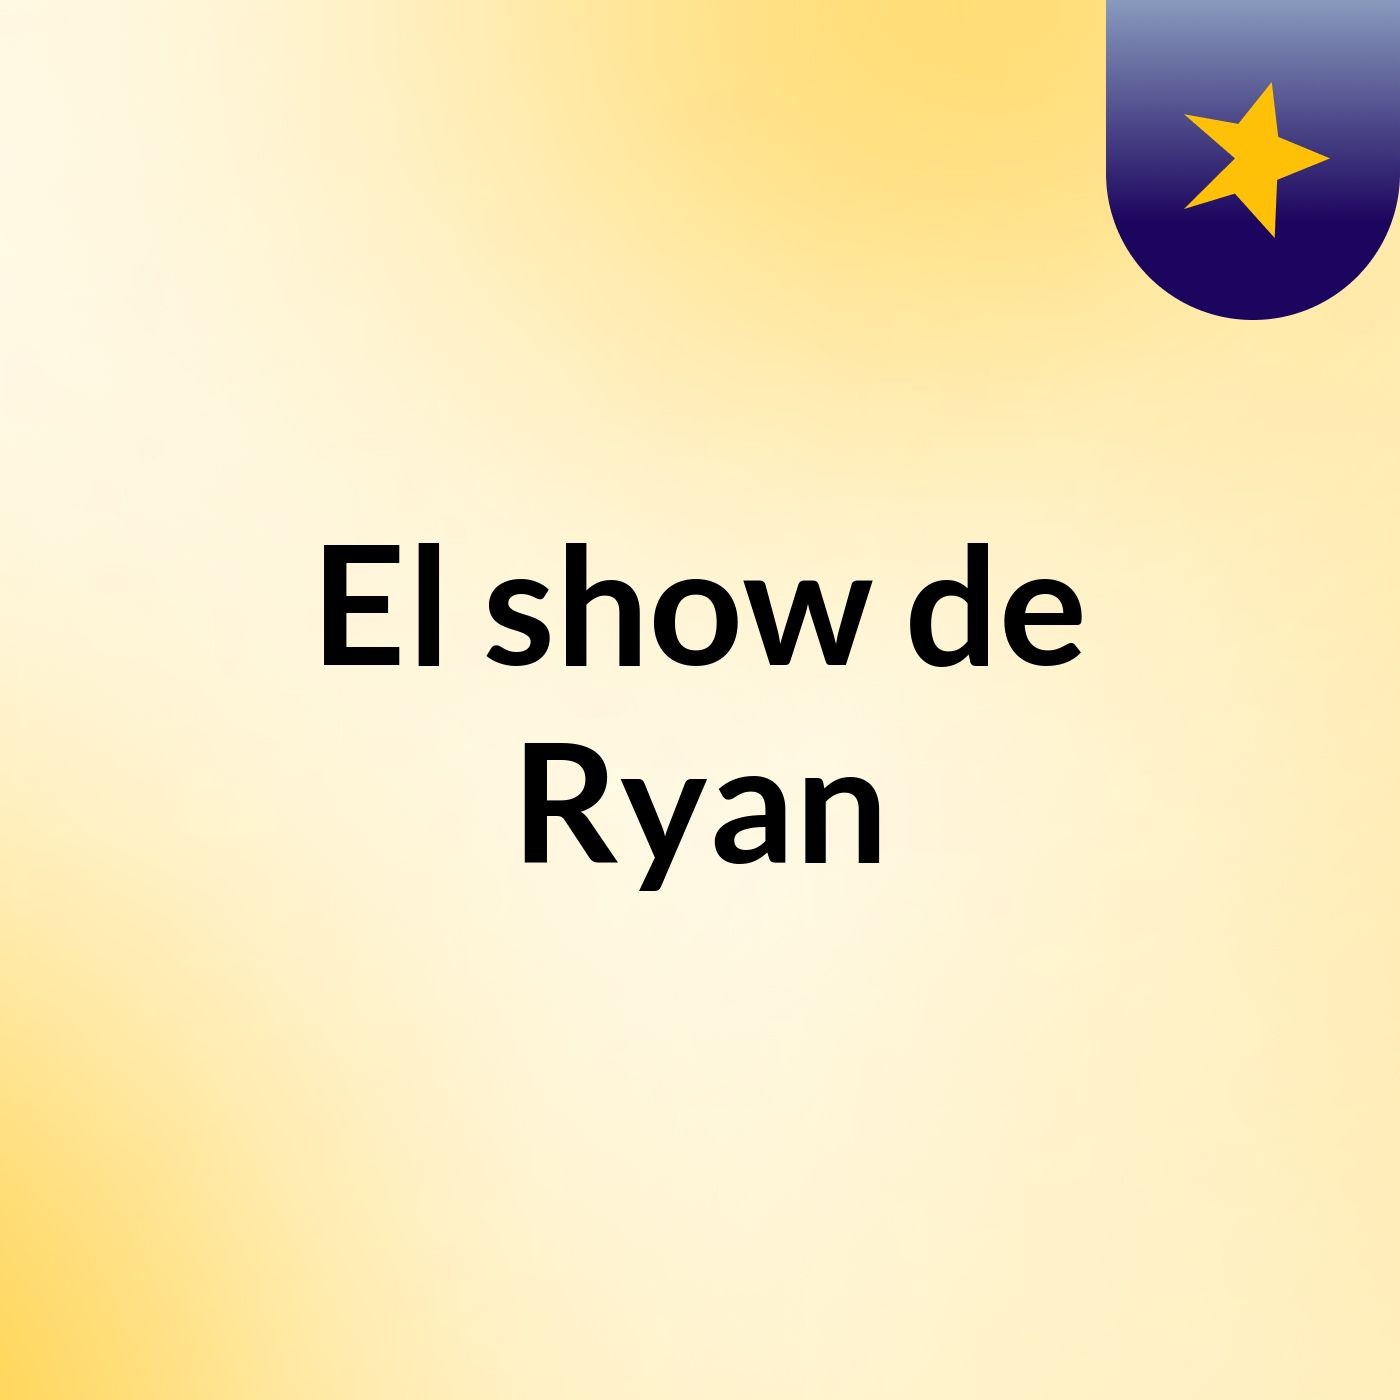 El show de Ryan